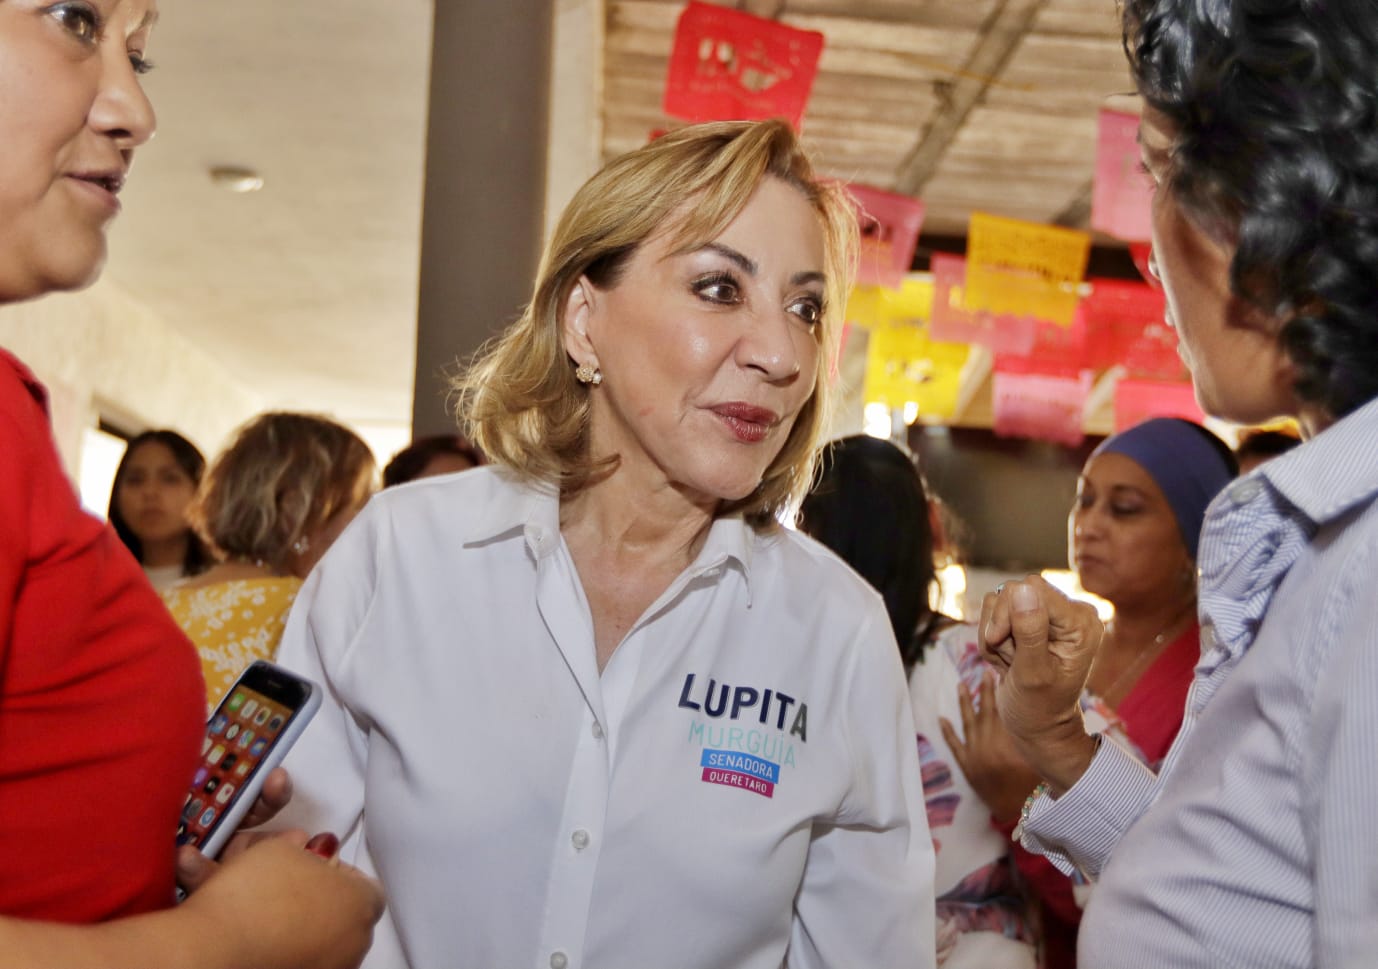 Hoy nos piden en las calles, defiendan la paz y tranquilidad de Querétaro: Lupita Murguía